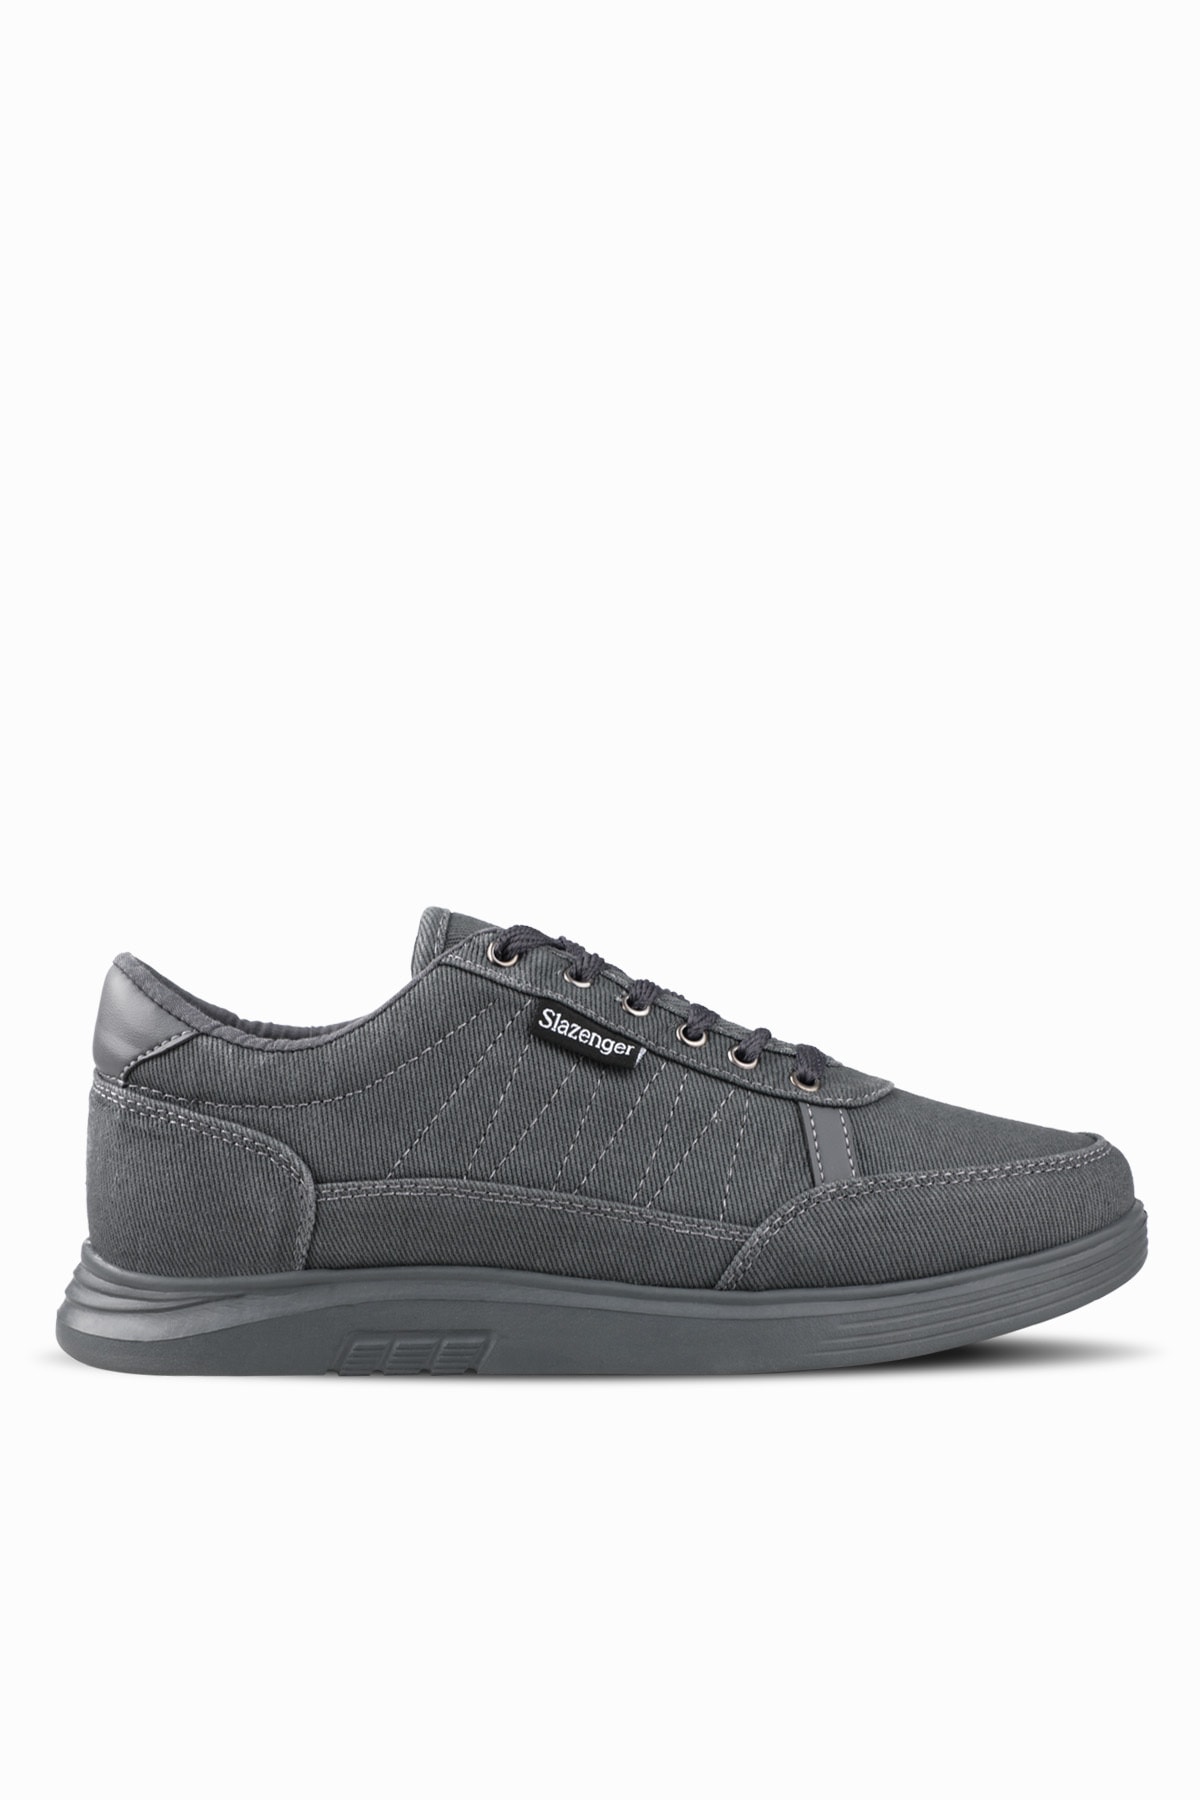 Slazenger Dahlia I Sneaker Men's Shoes Dark Gray